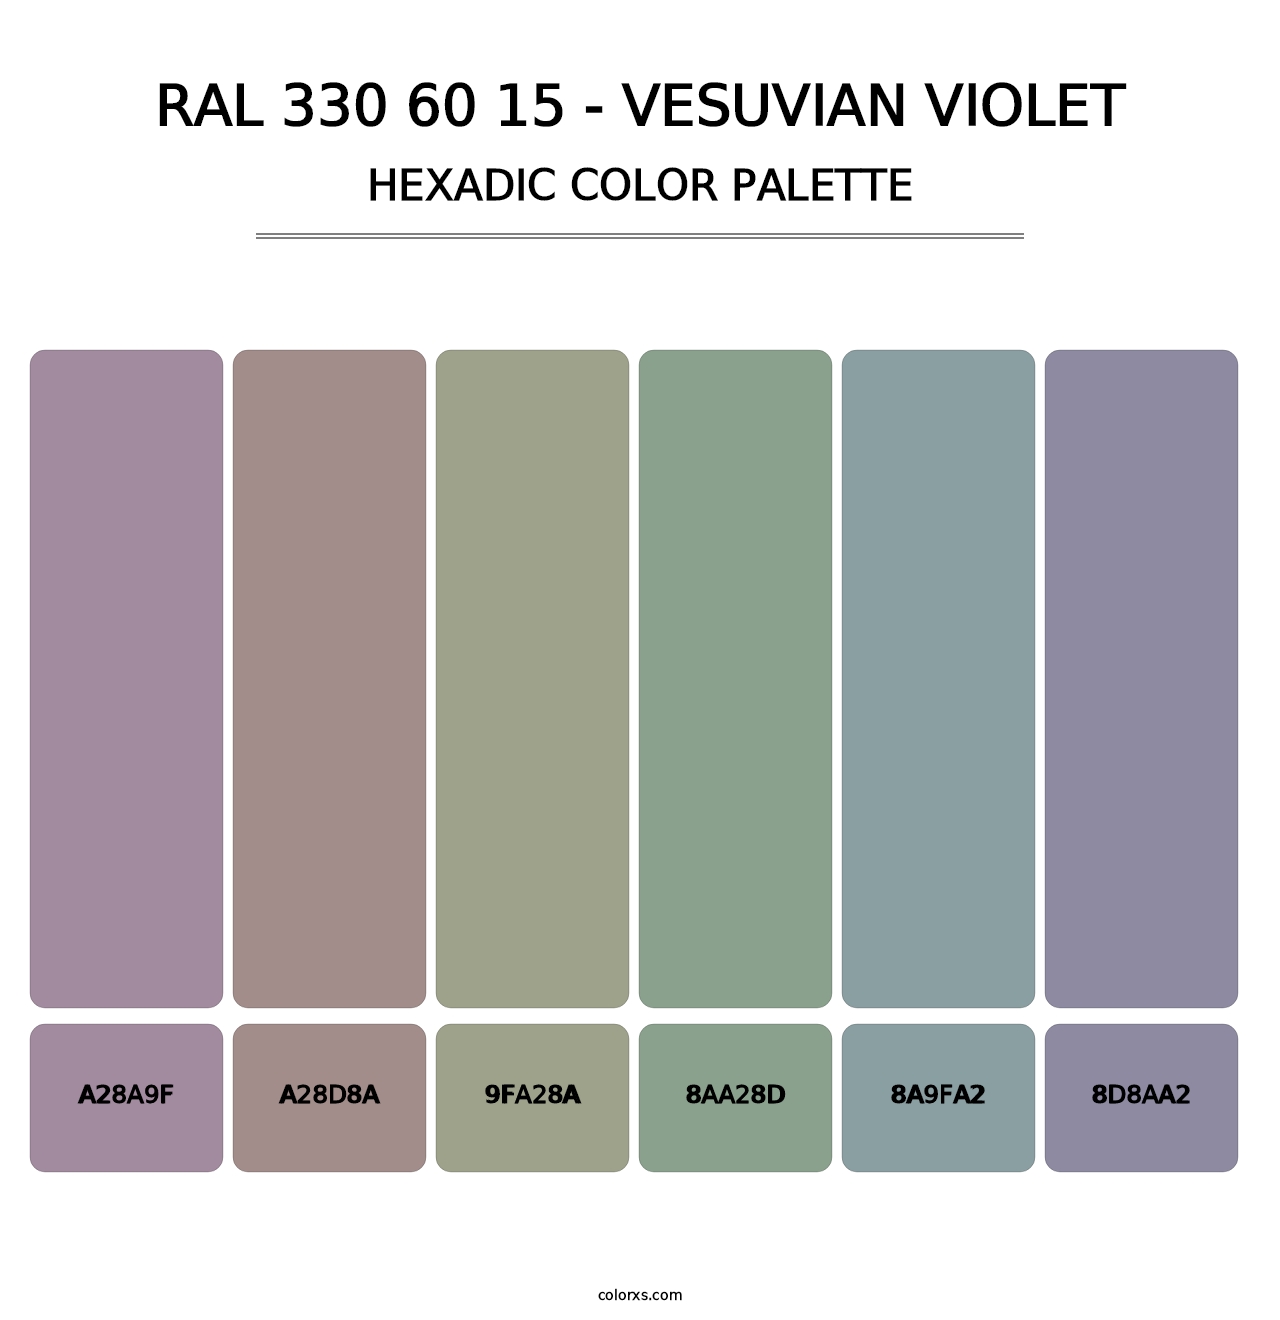 RAL 330 60 15 - Vesuvian Violet - Hexadic Color Palette